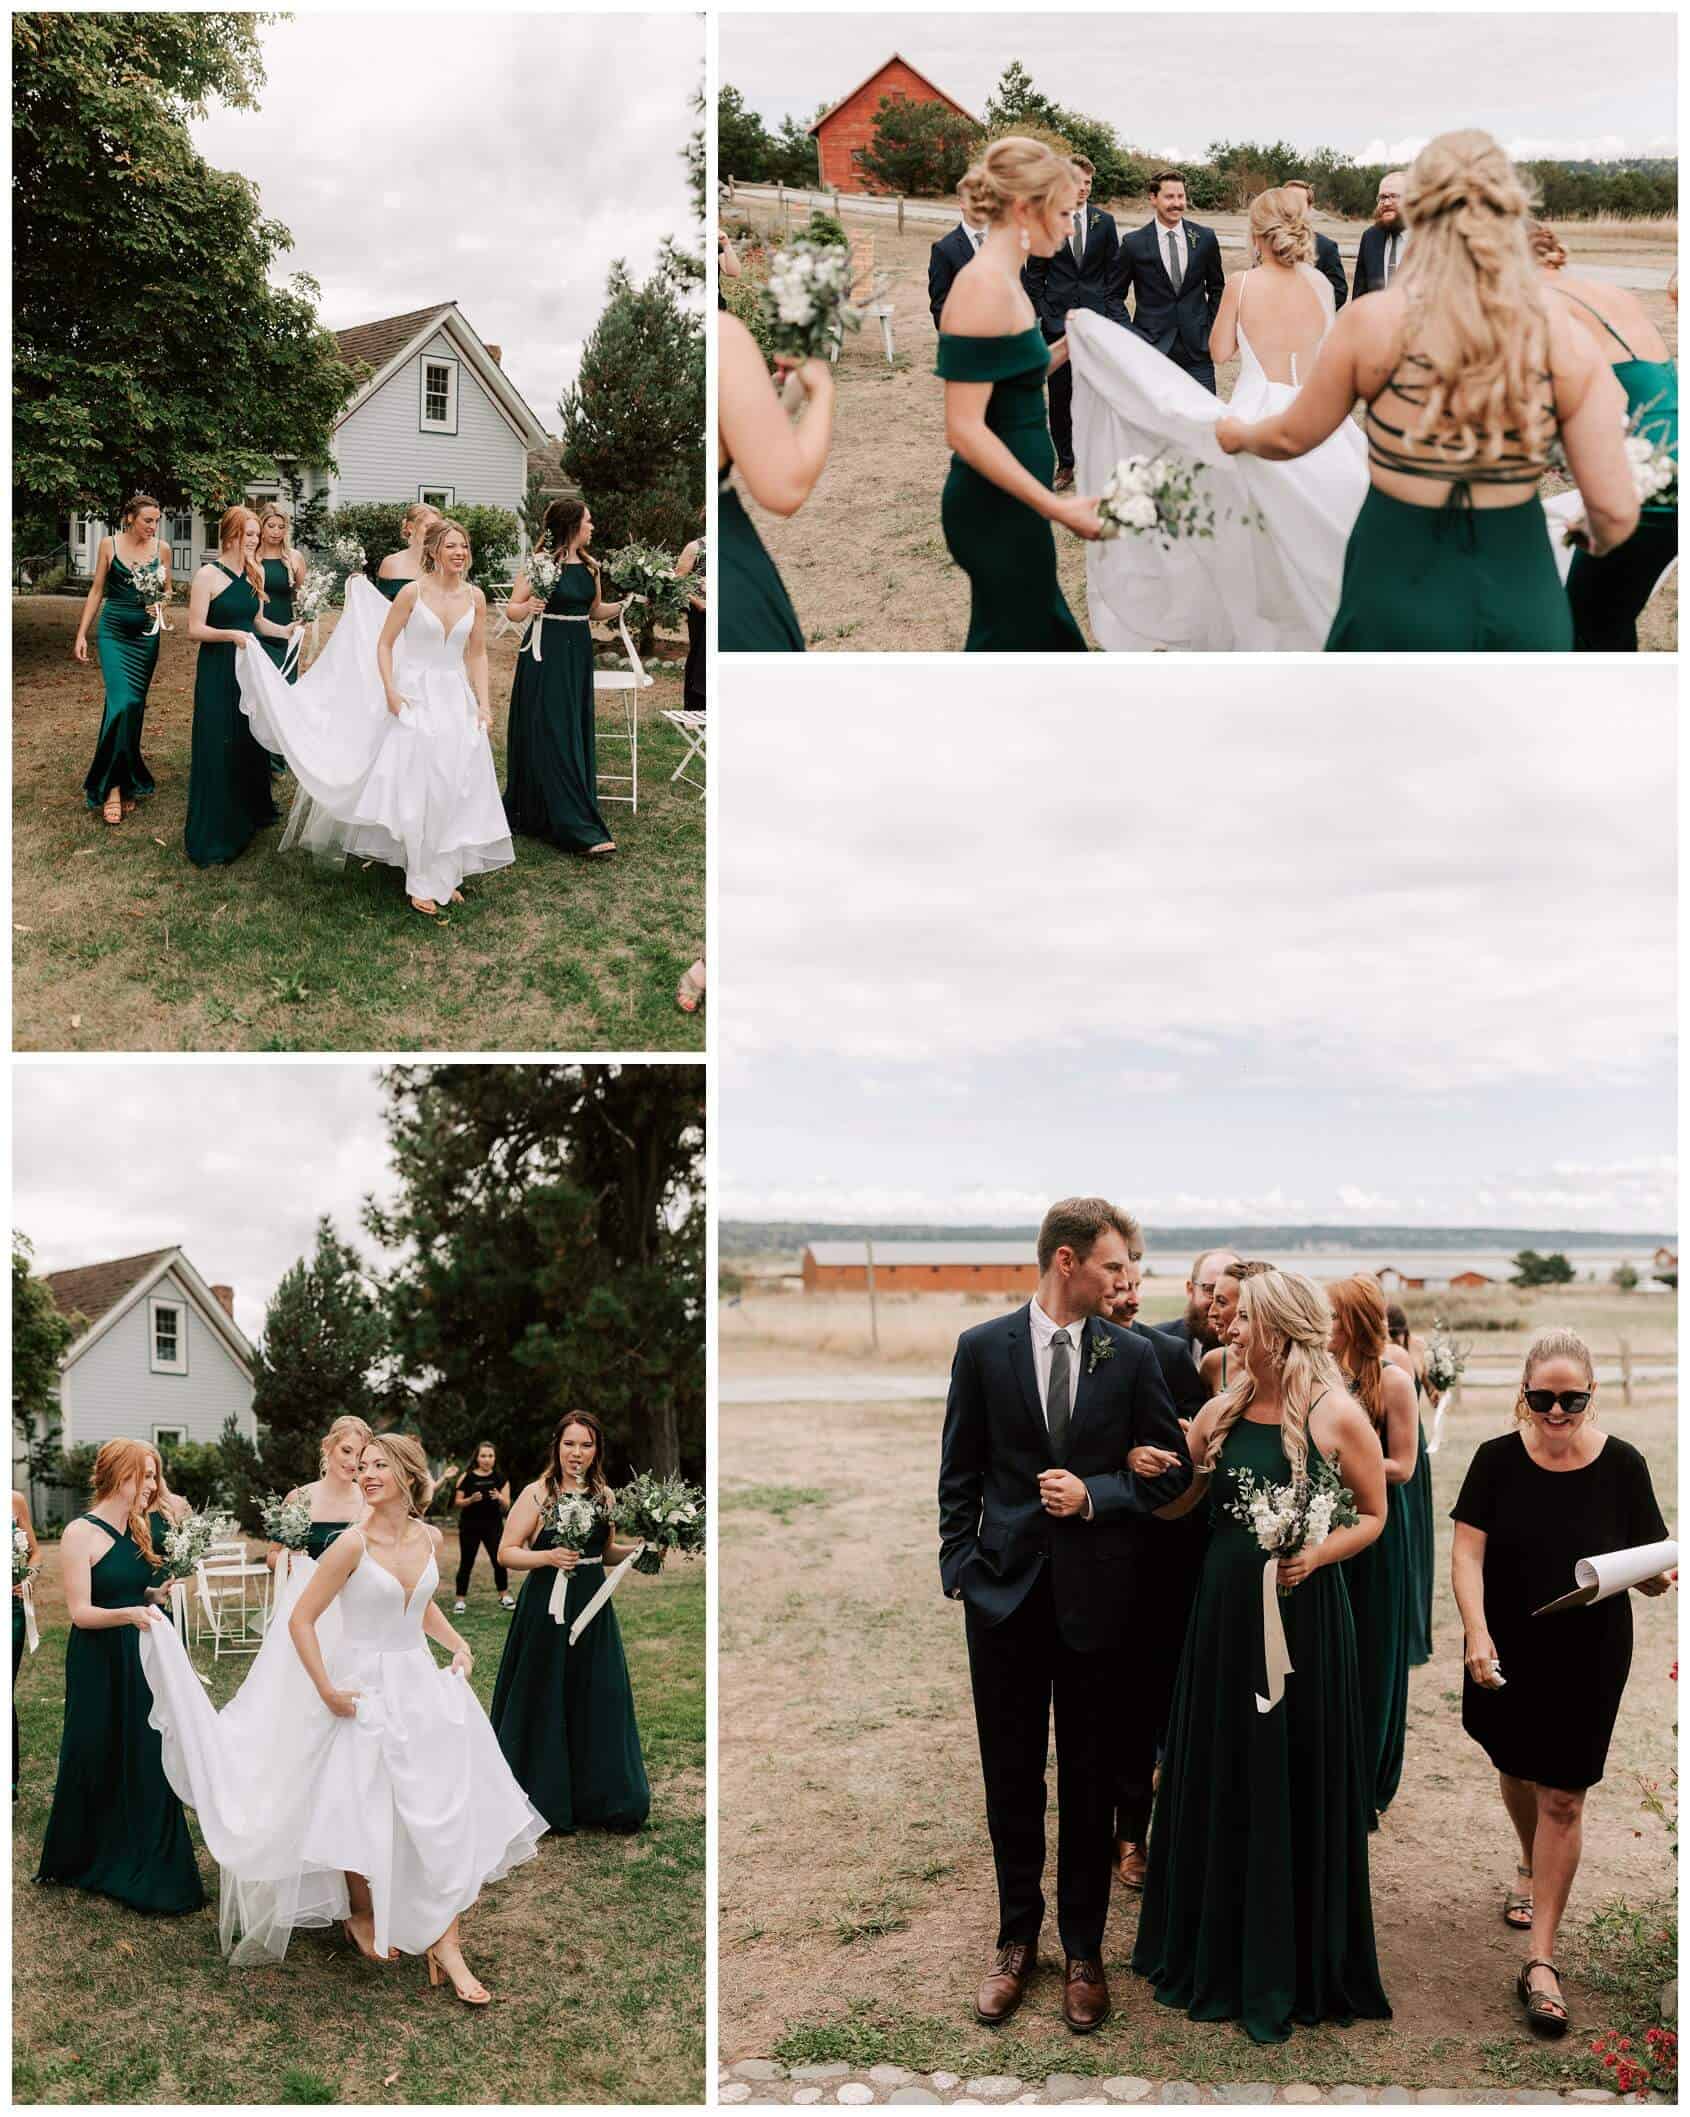 Crockett Farm wedding photos on Whidbey Island - by Luma Weddings